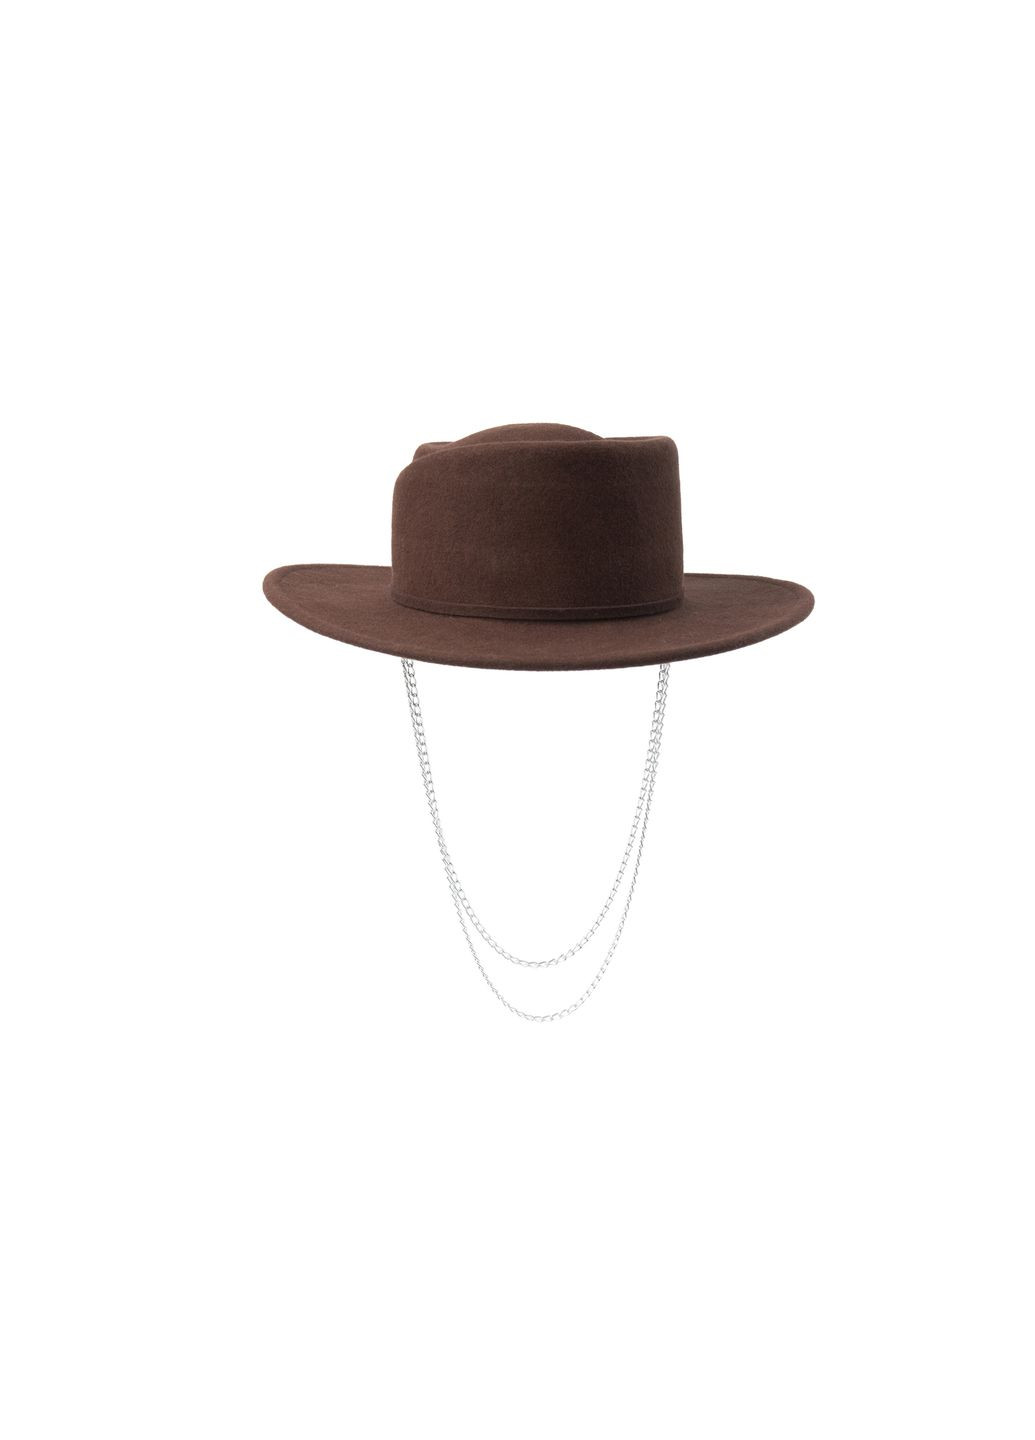 Шляпа канотье женская с серебряной цепочкой и фигурным верхом фетр коричневая LuckyLOOK 653-444 (289478408)